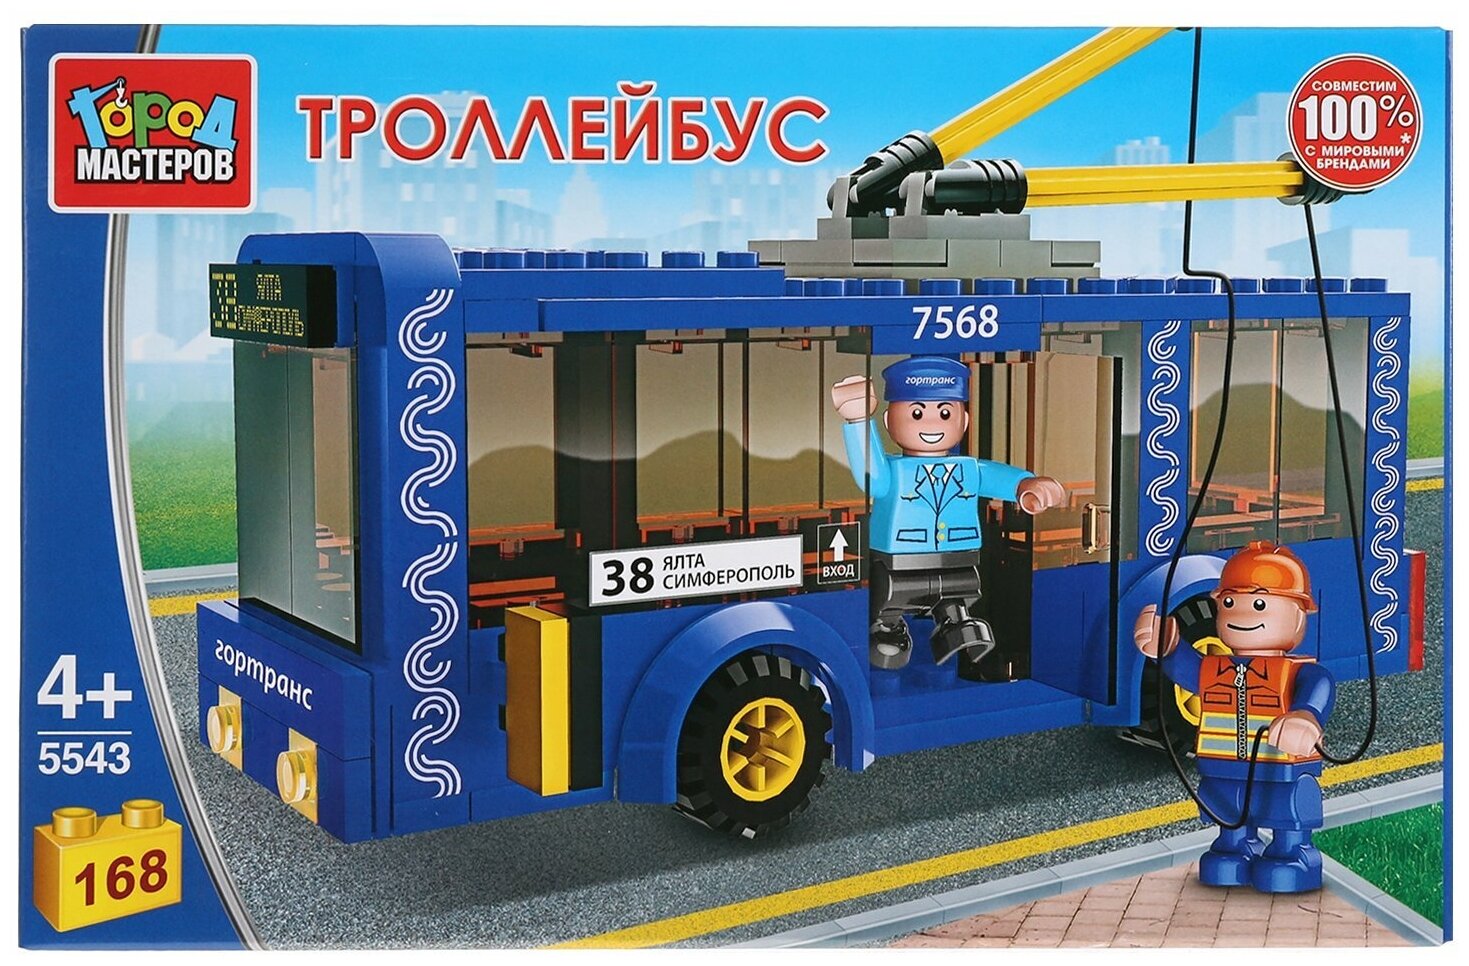 Город мастеров Конструктор «Троллейбус» с фигурками, 168 деталей